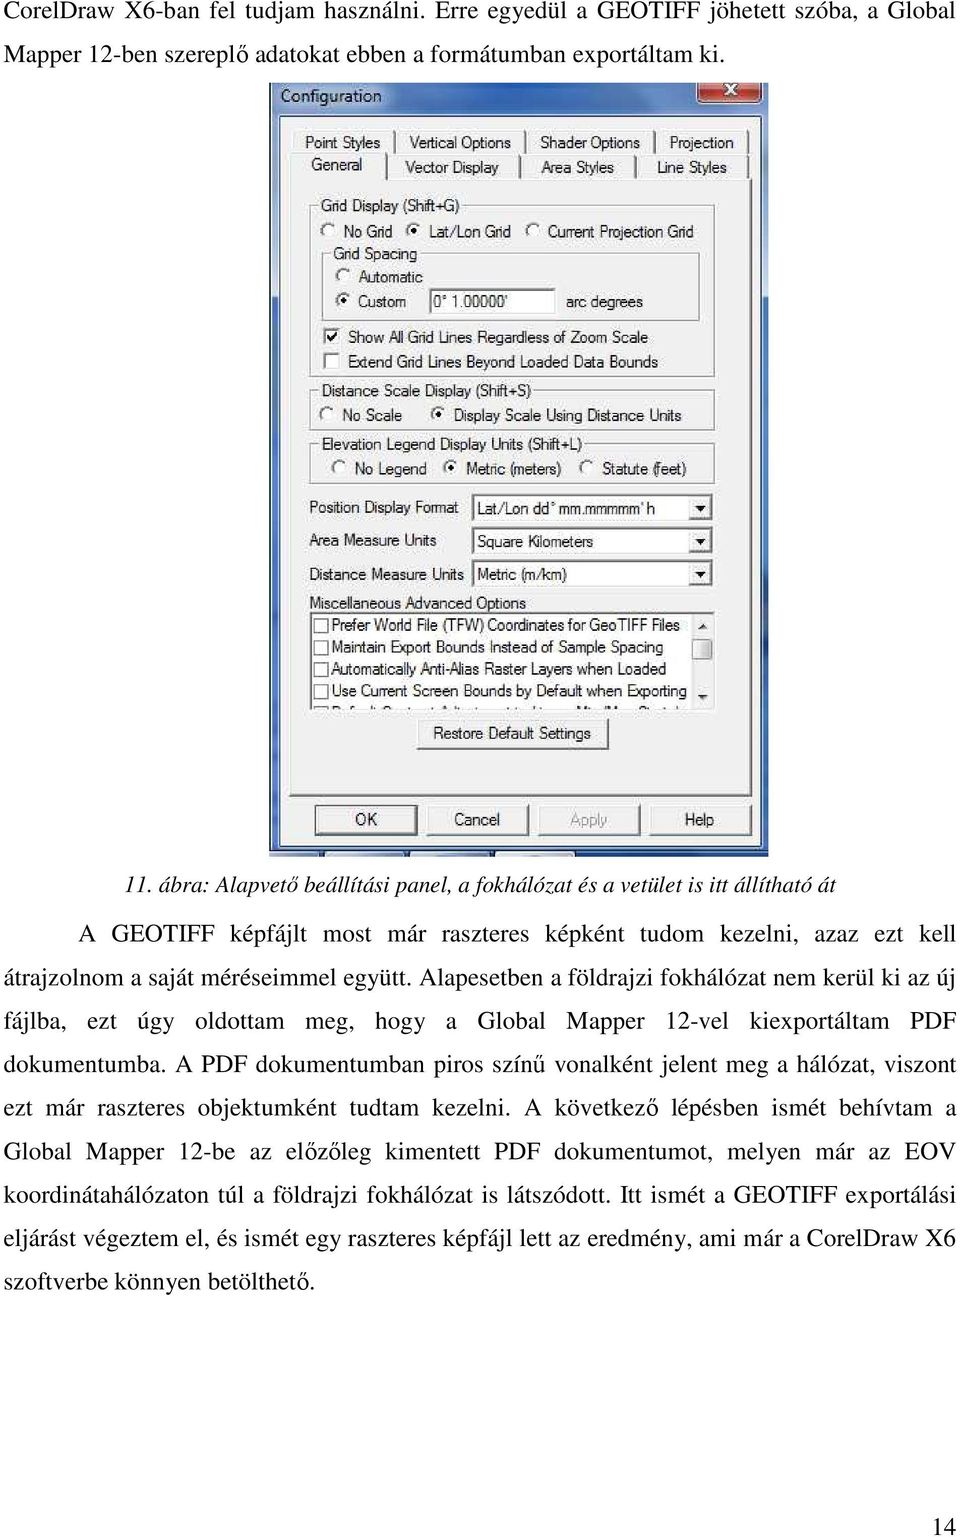 Alapesetben a földrajzi fokhálózat nem kerül ki az új fájlba, ezt úgy oldottam meg, hogy a Global Mapper 12-vel kiexportáltam PDF dokumentumba.